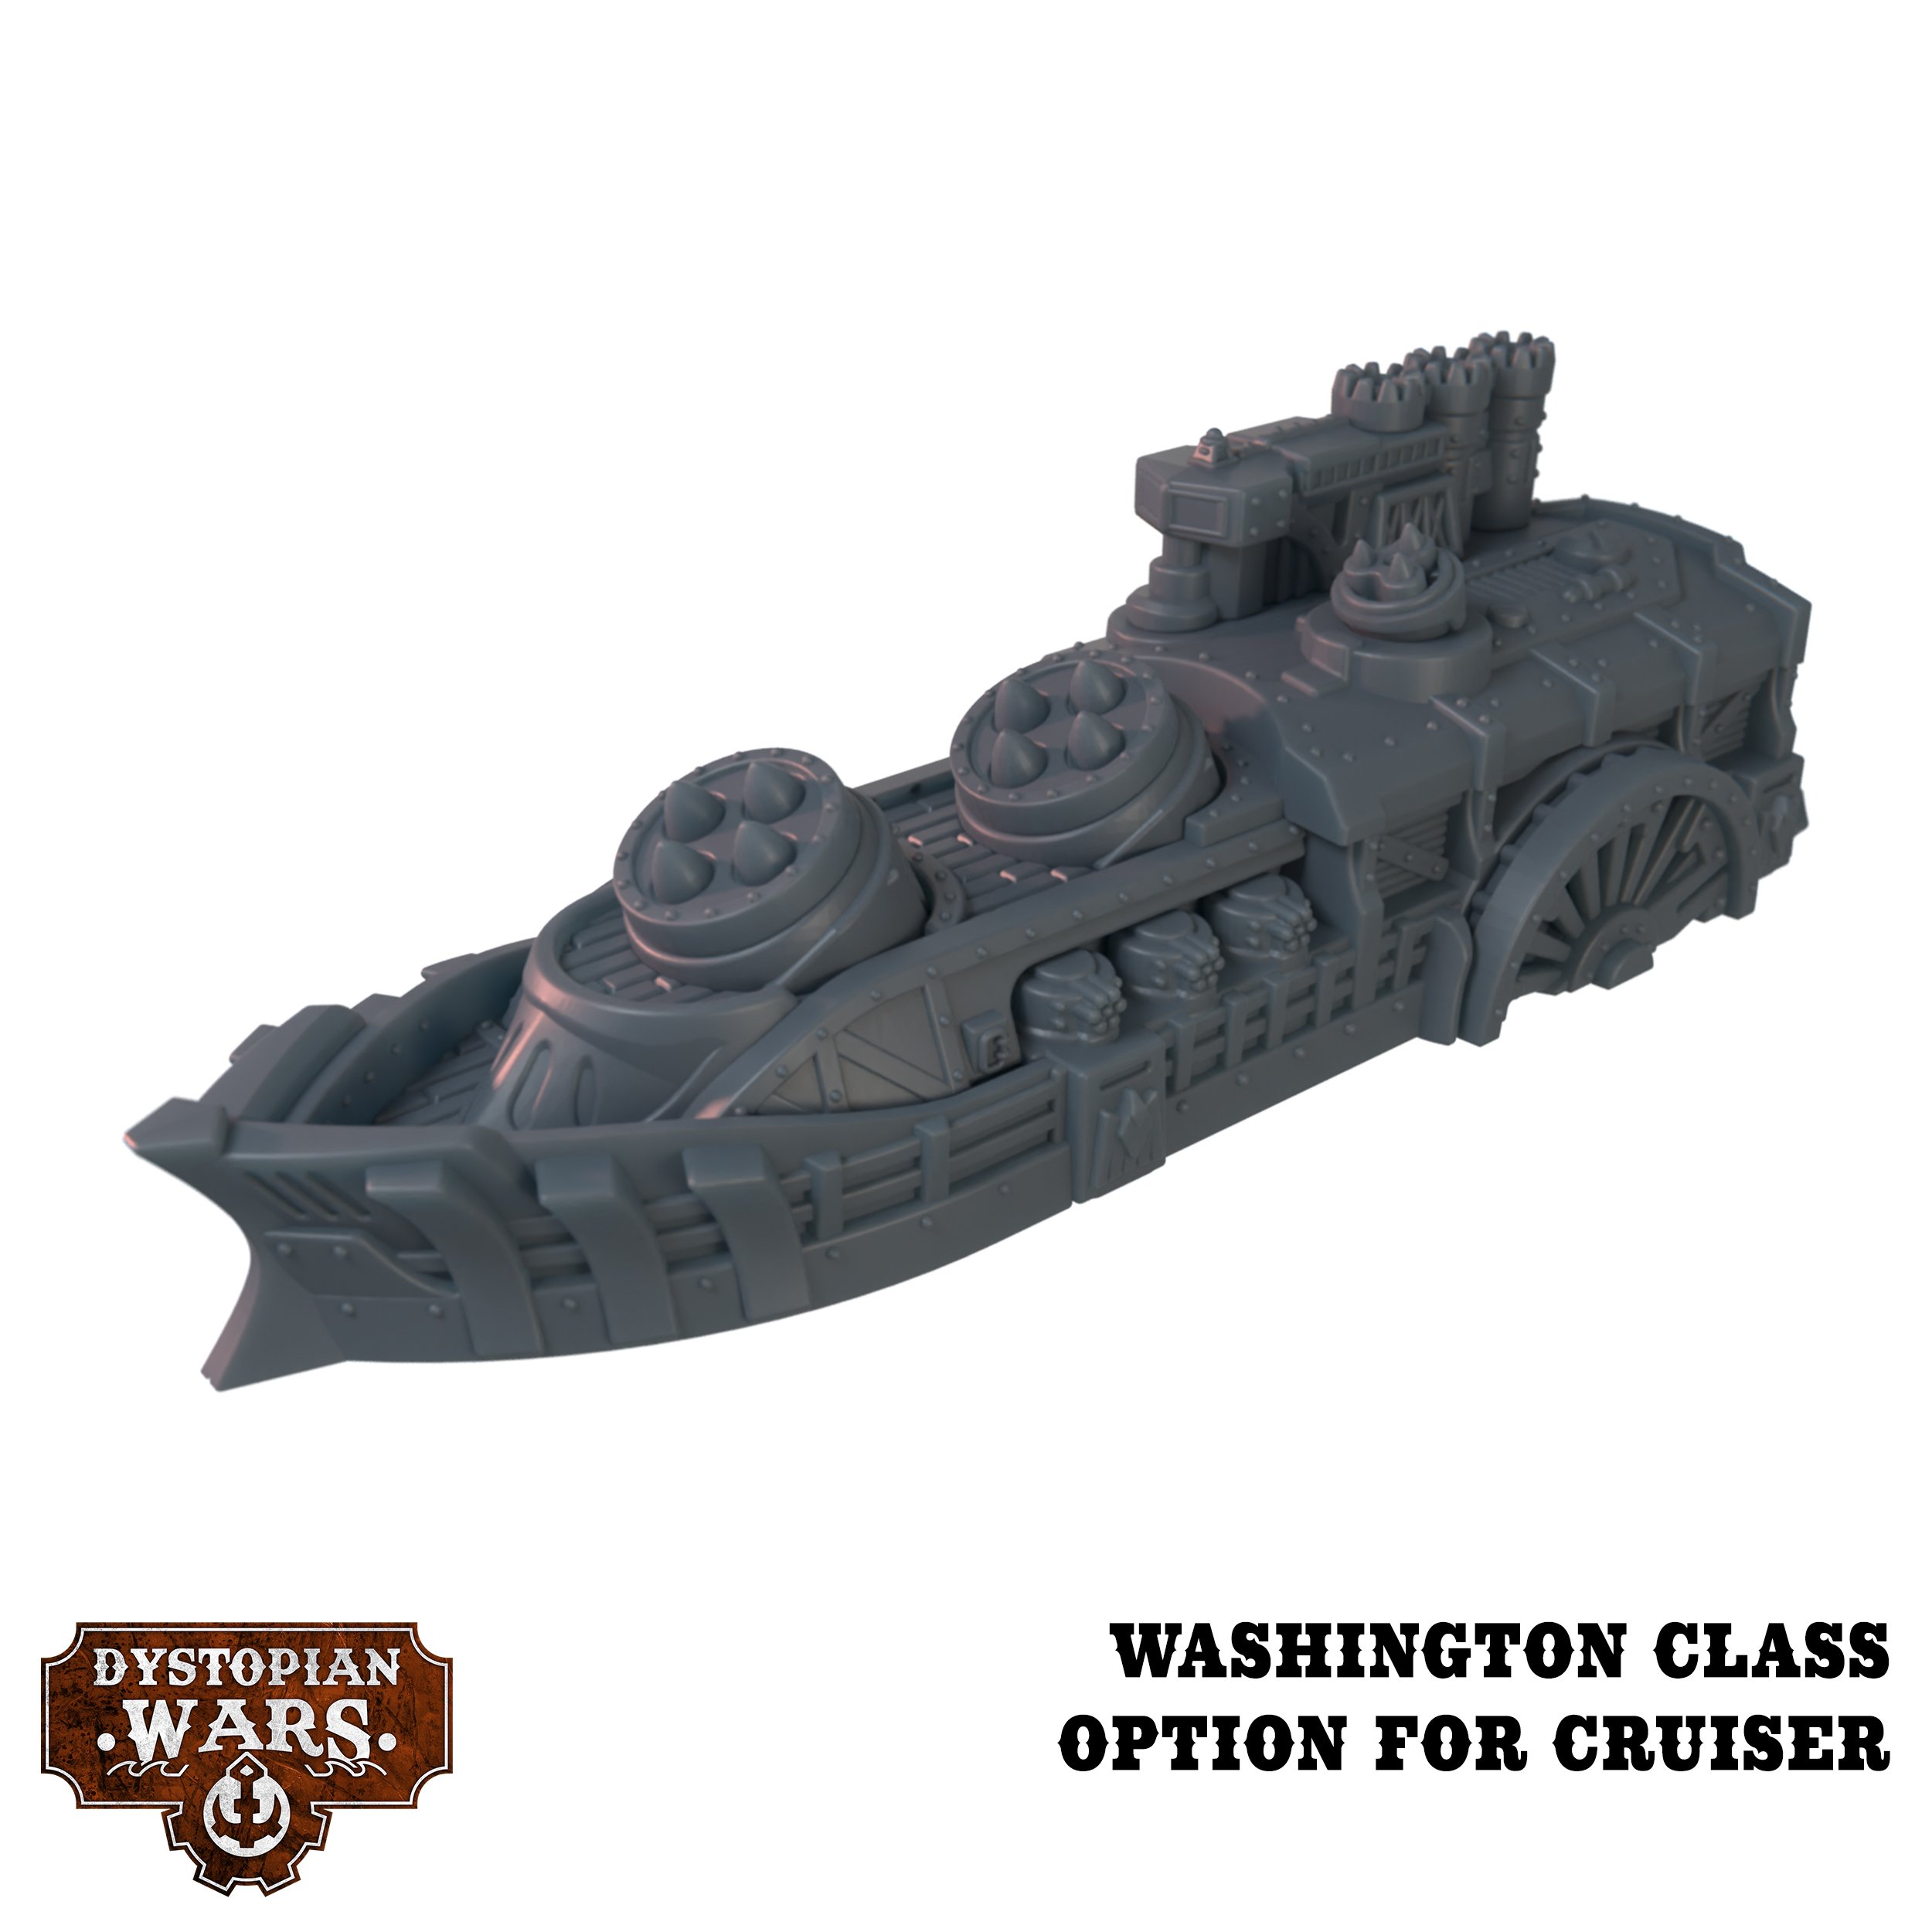 Washington Class Cruiser - Dystopian Wars